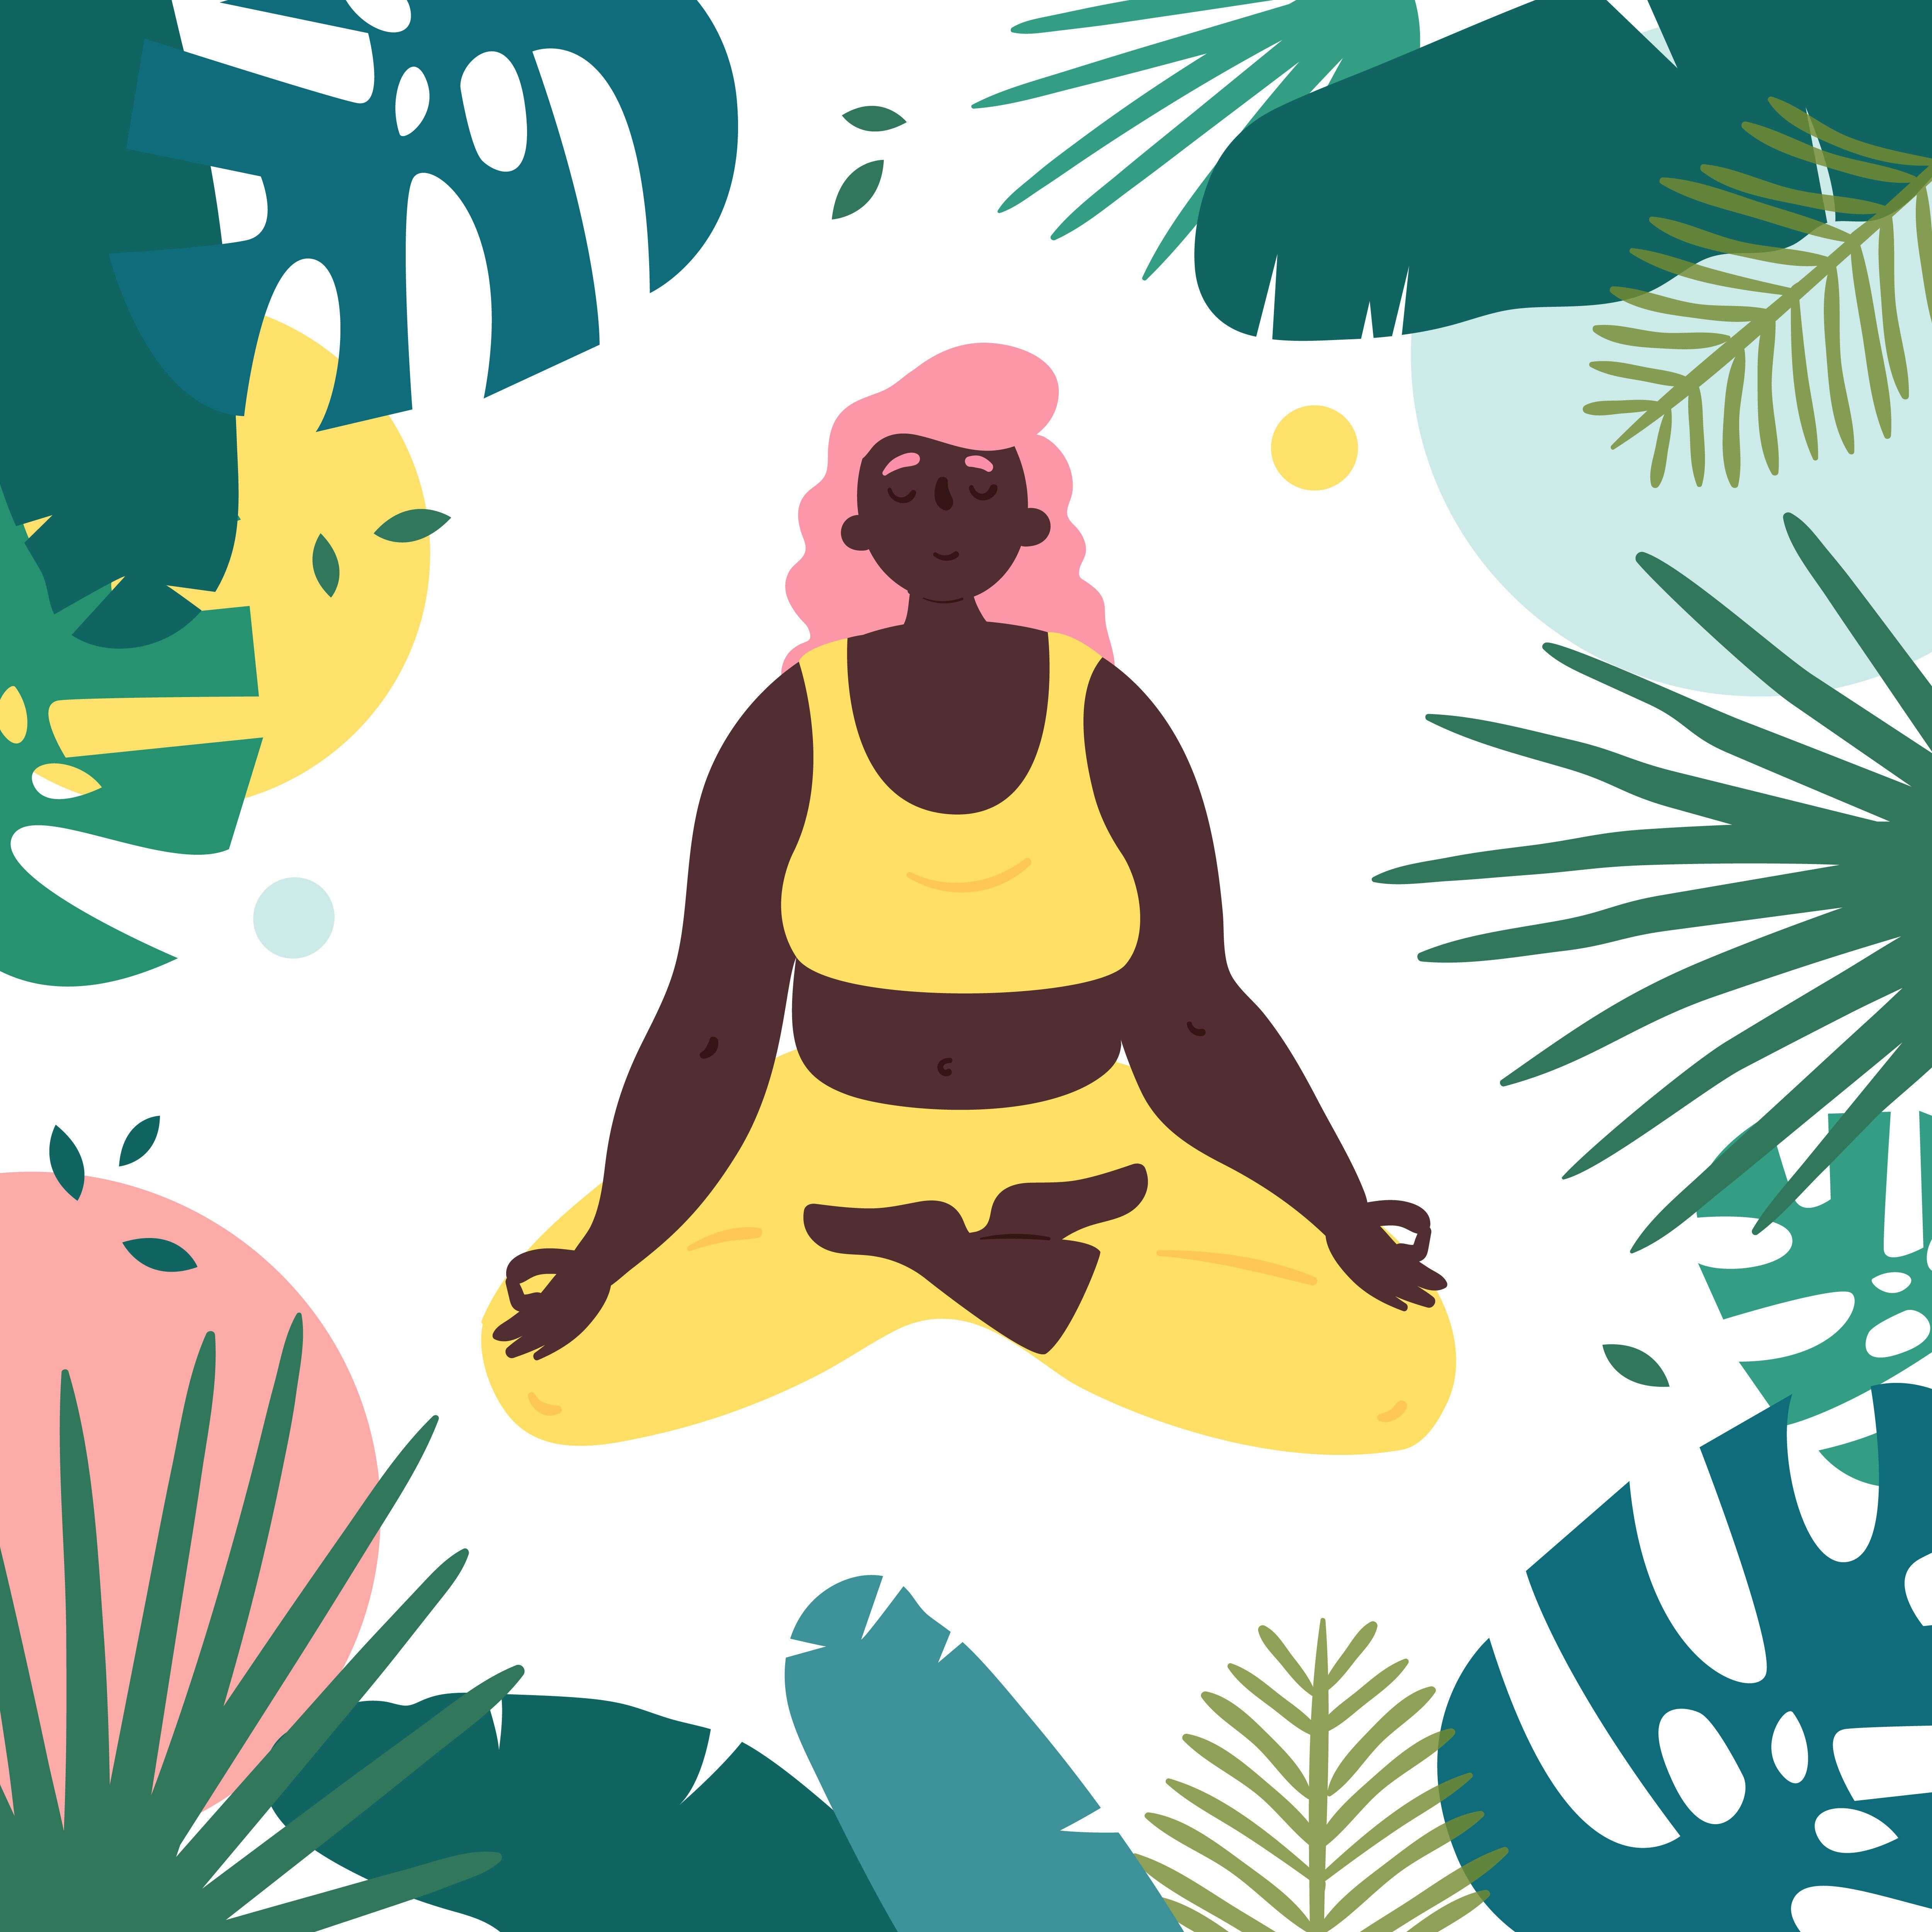 Pendant le confinement, faire du yoga ou pratiquer la méditation peuvent être des manières d'empêcher un engourdissement physique et mental, selon Morgane Enselme.